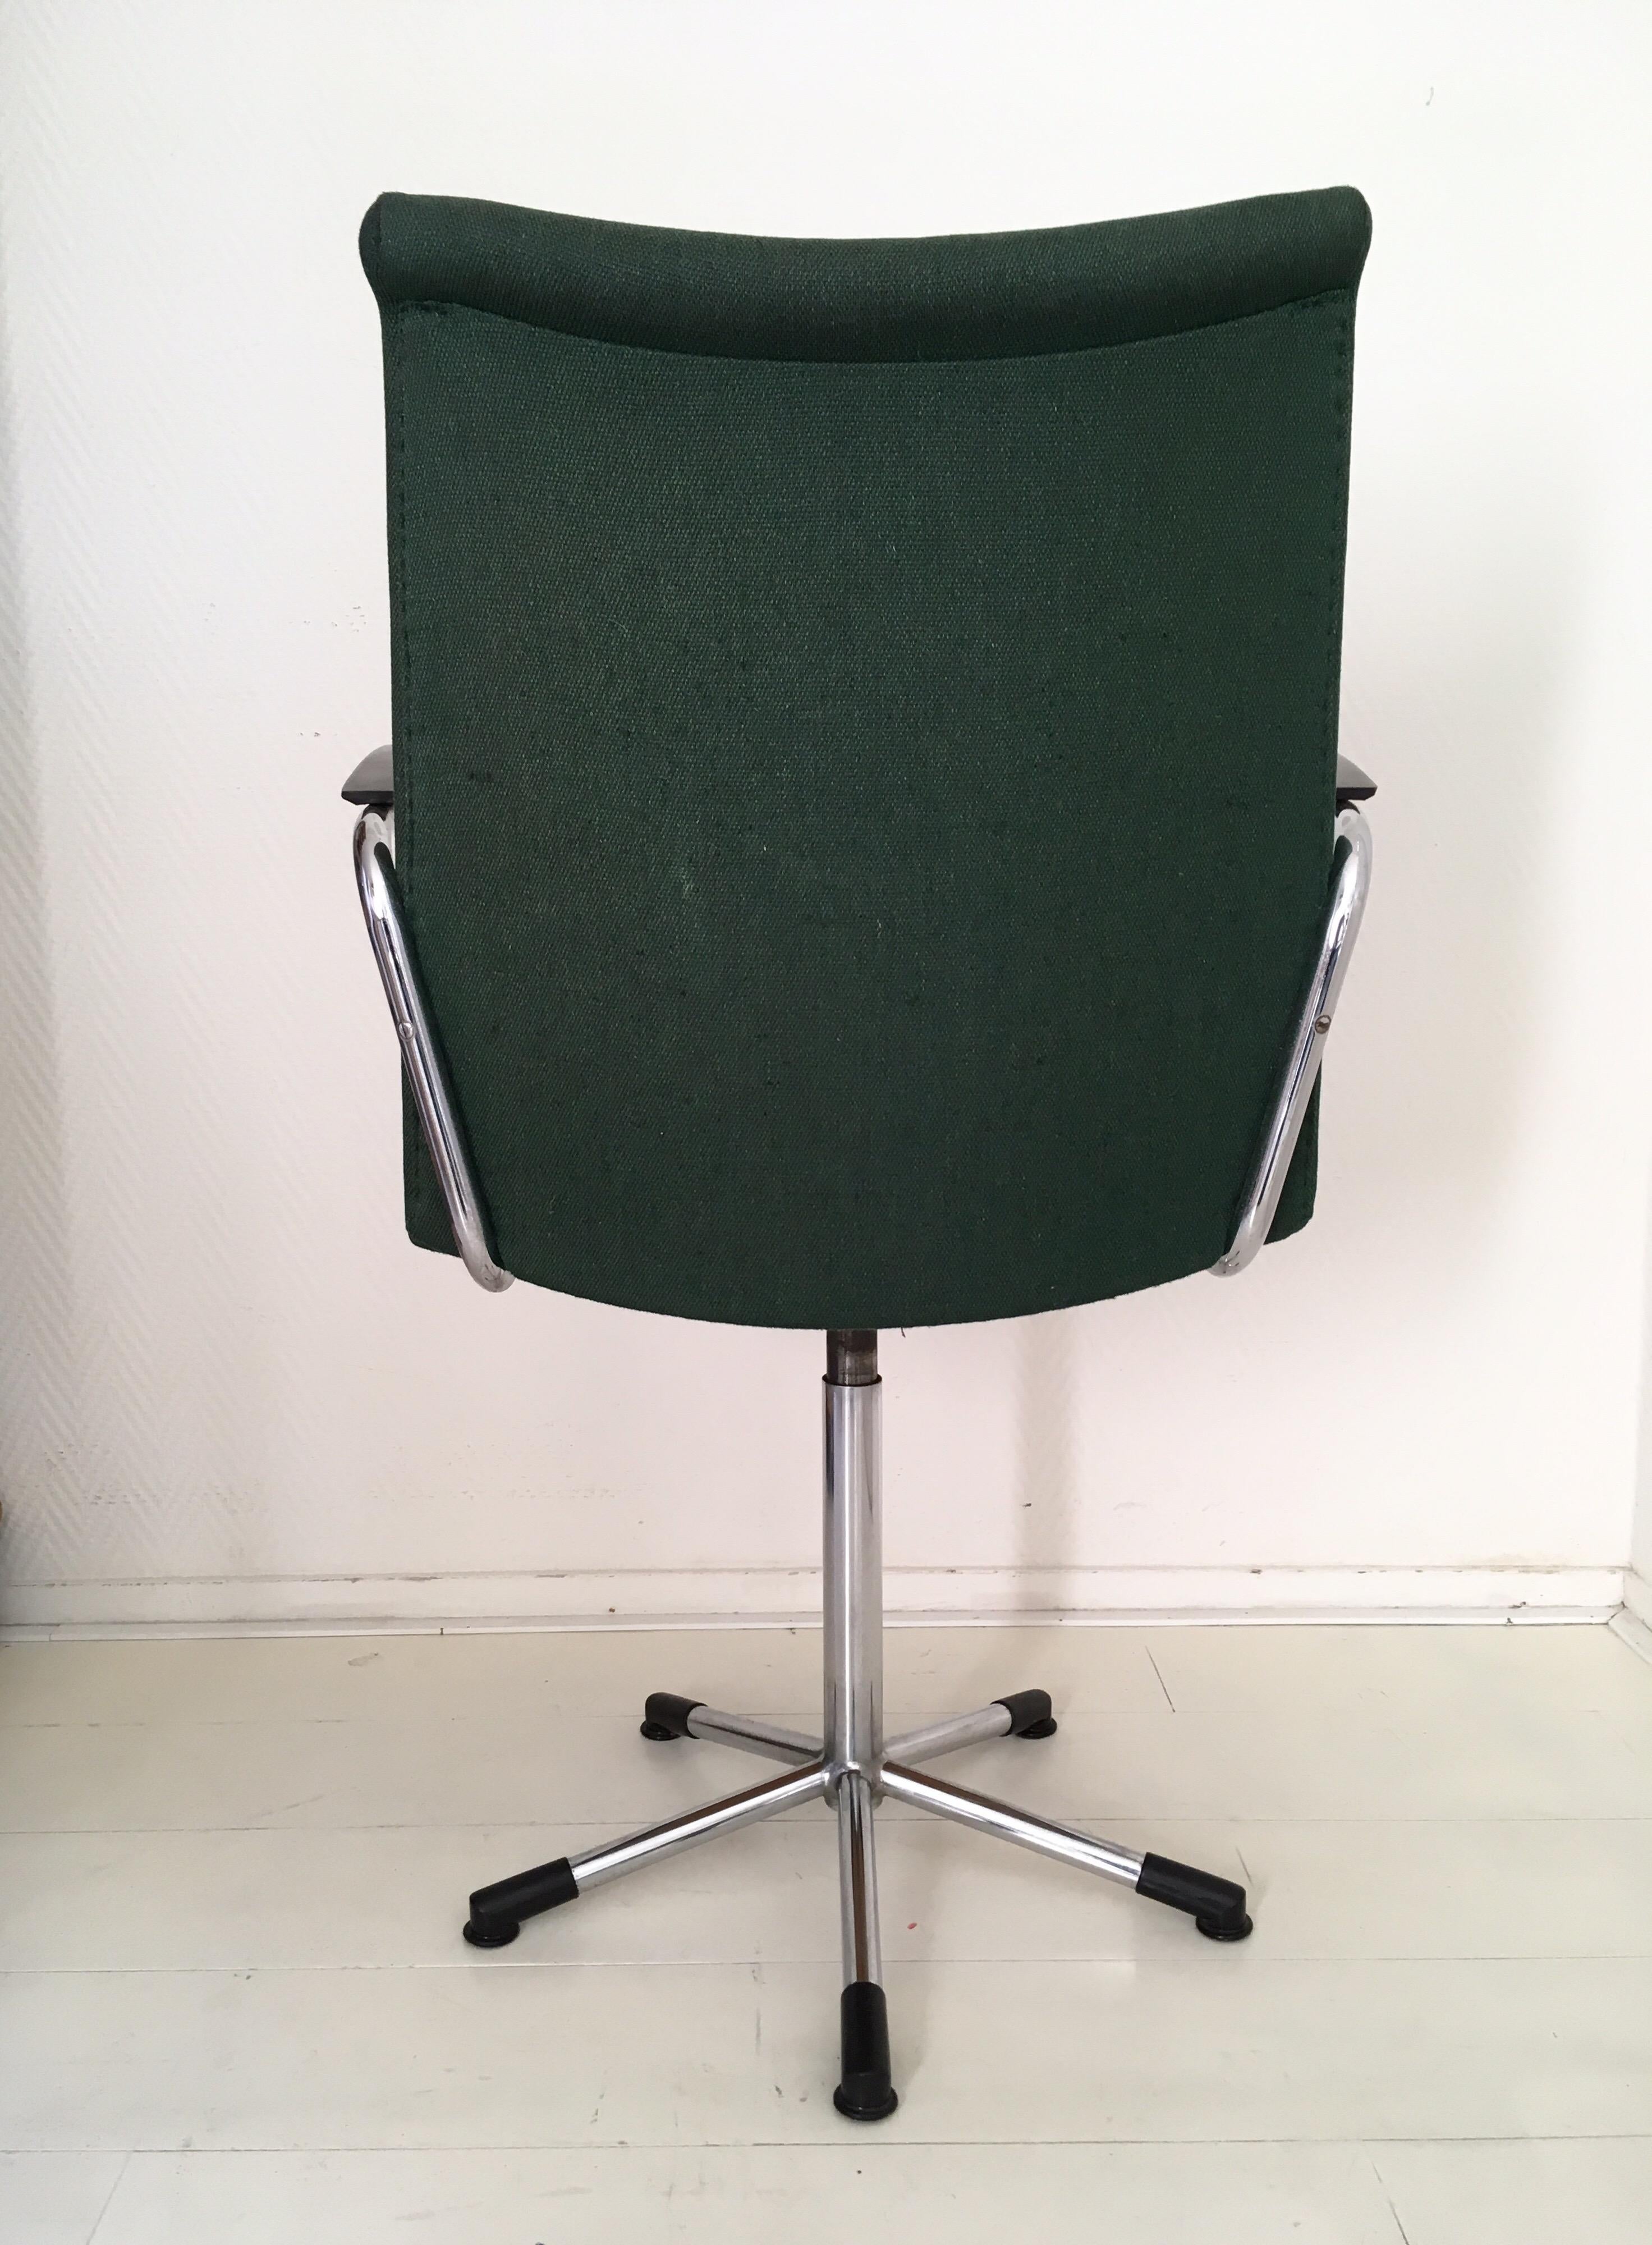 moss green office chair